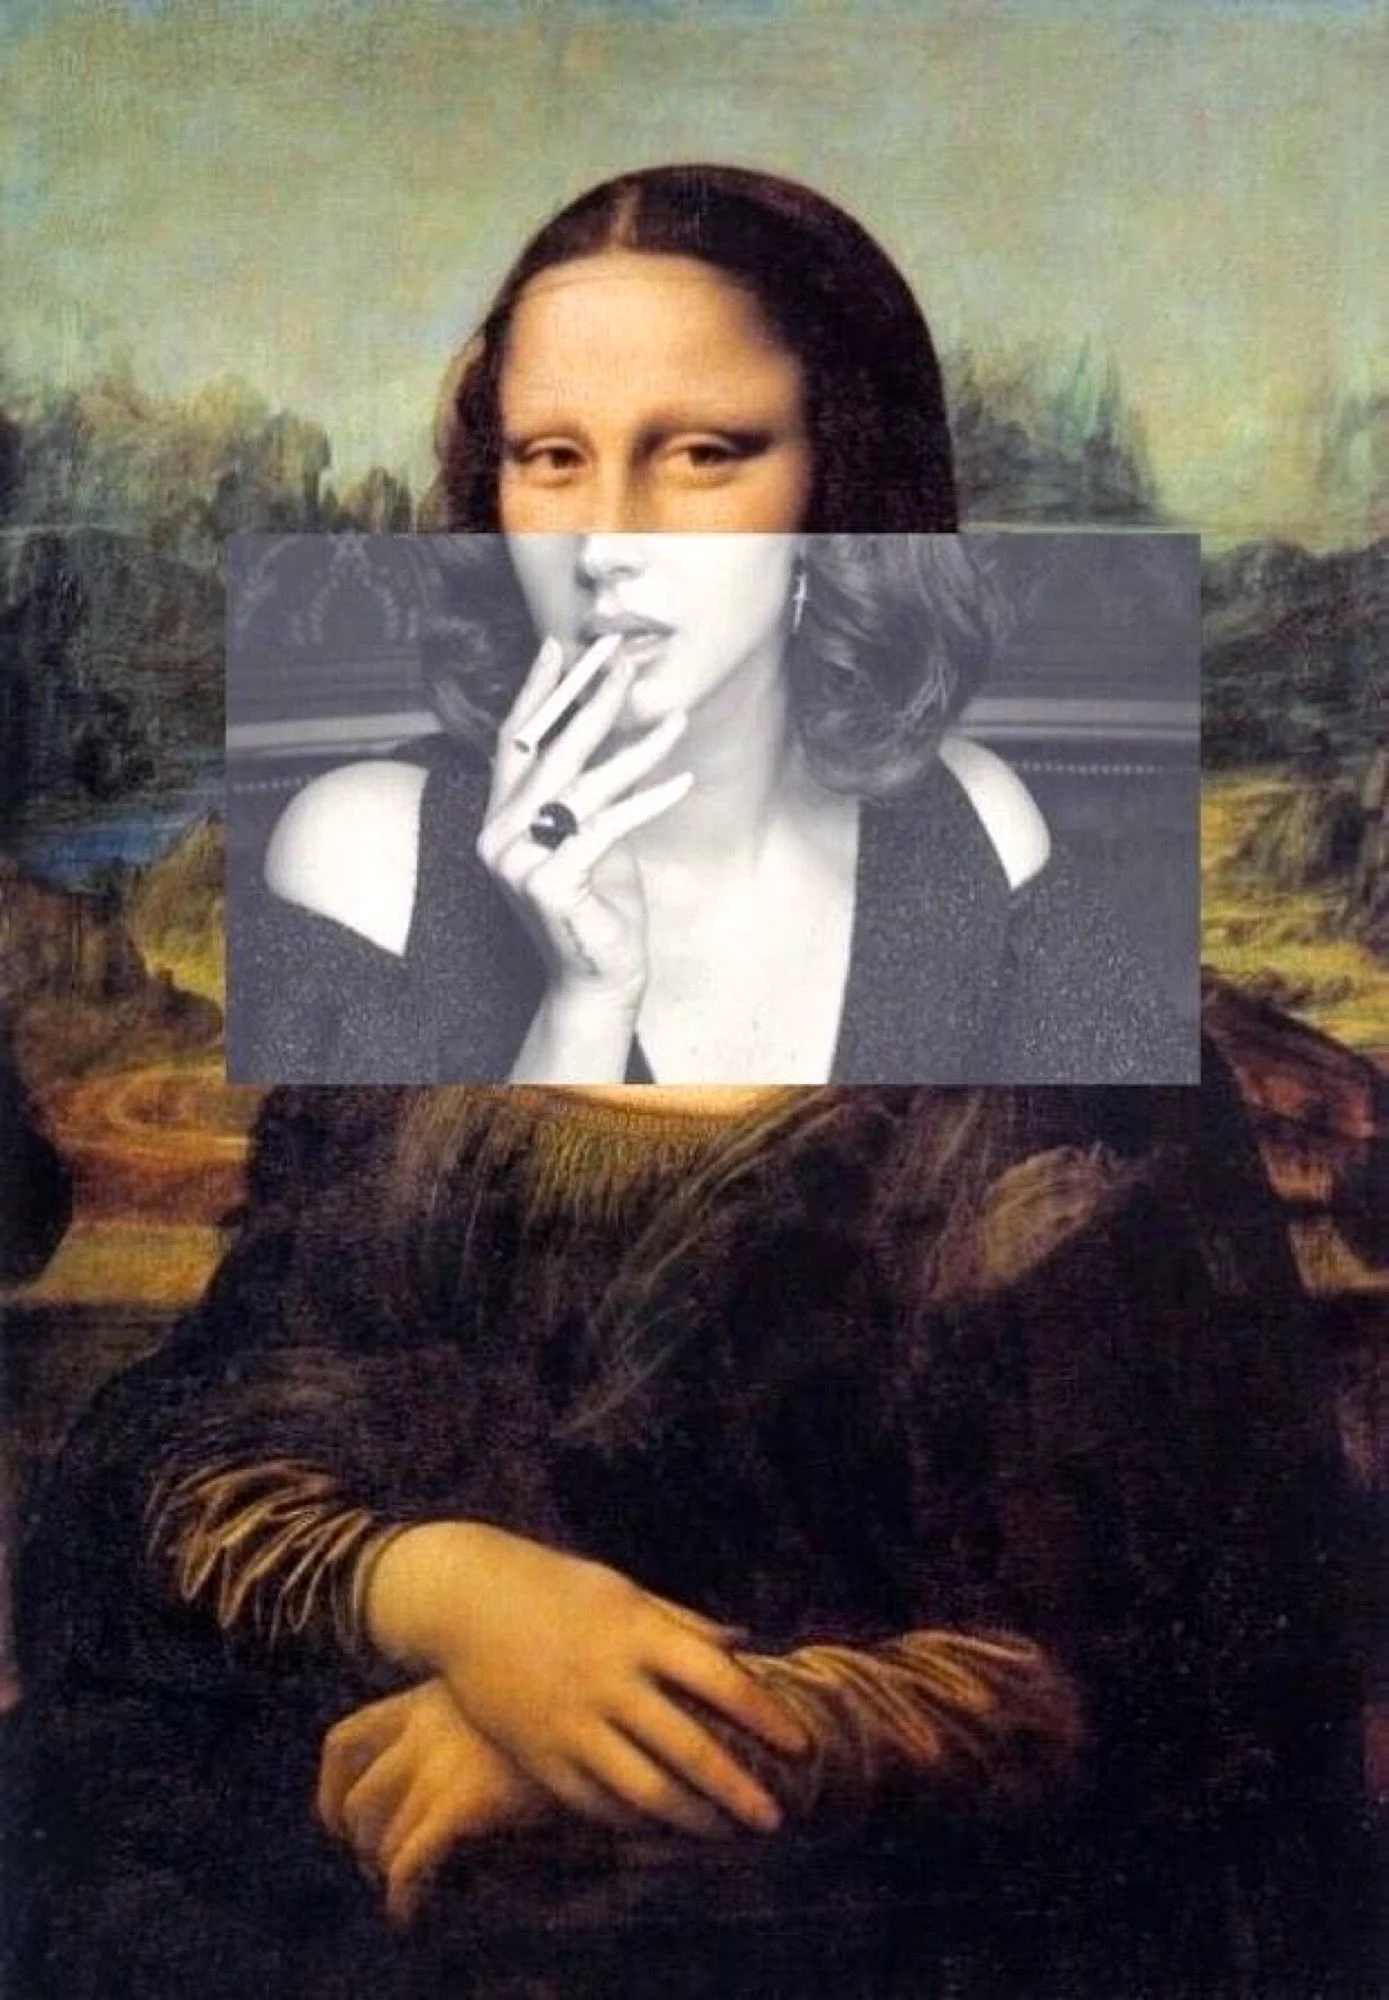 Mona Lisa 2020 Wallpaper